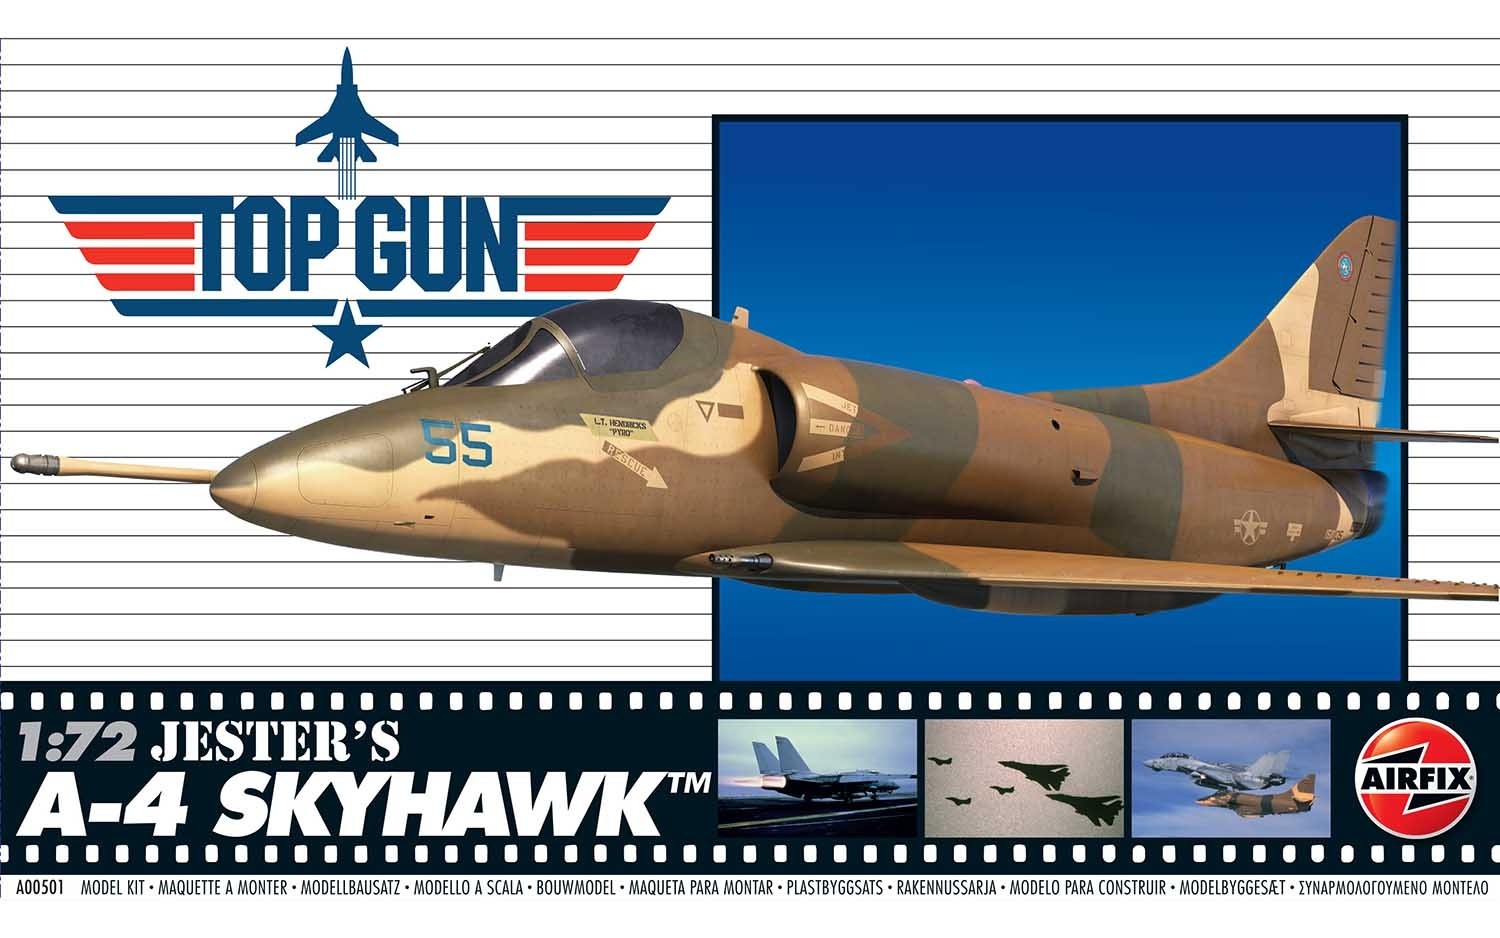 Airfix A00501 Jester's A-4 SKYHAWK 'TOP GUN Maverick'